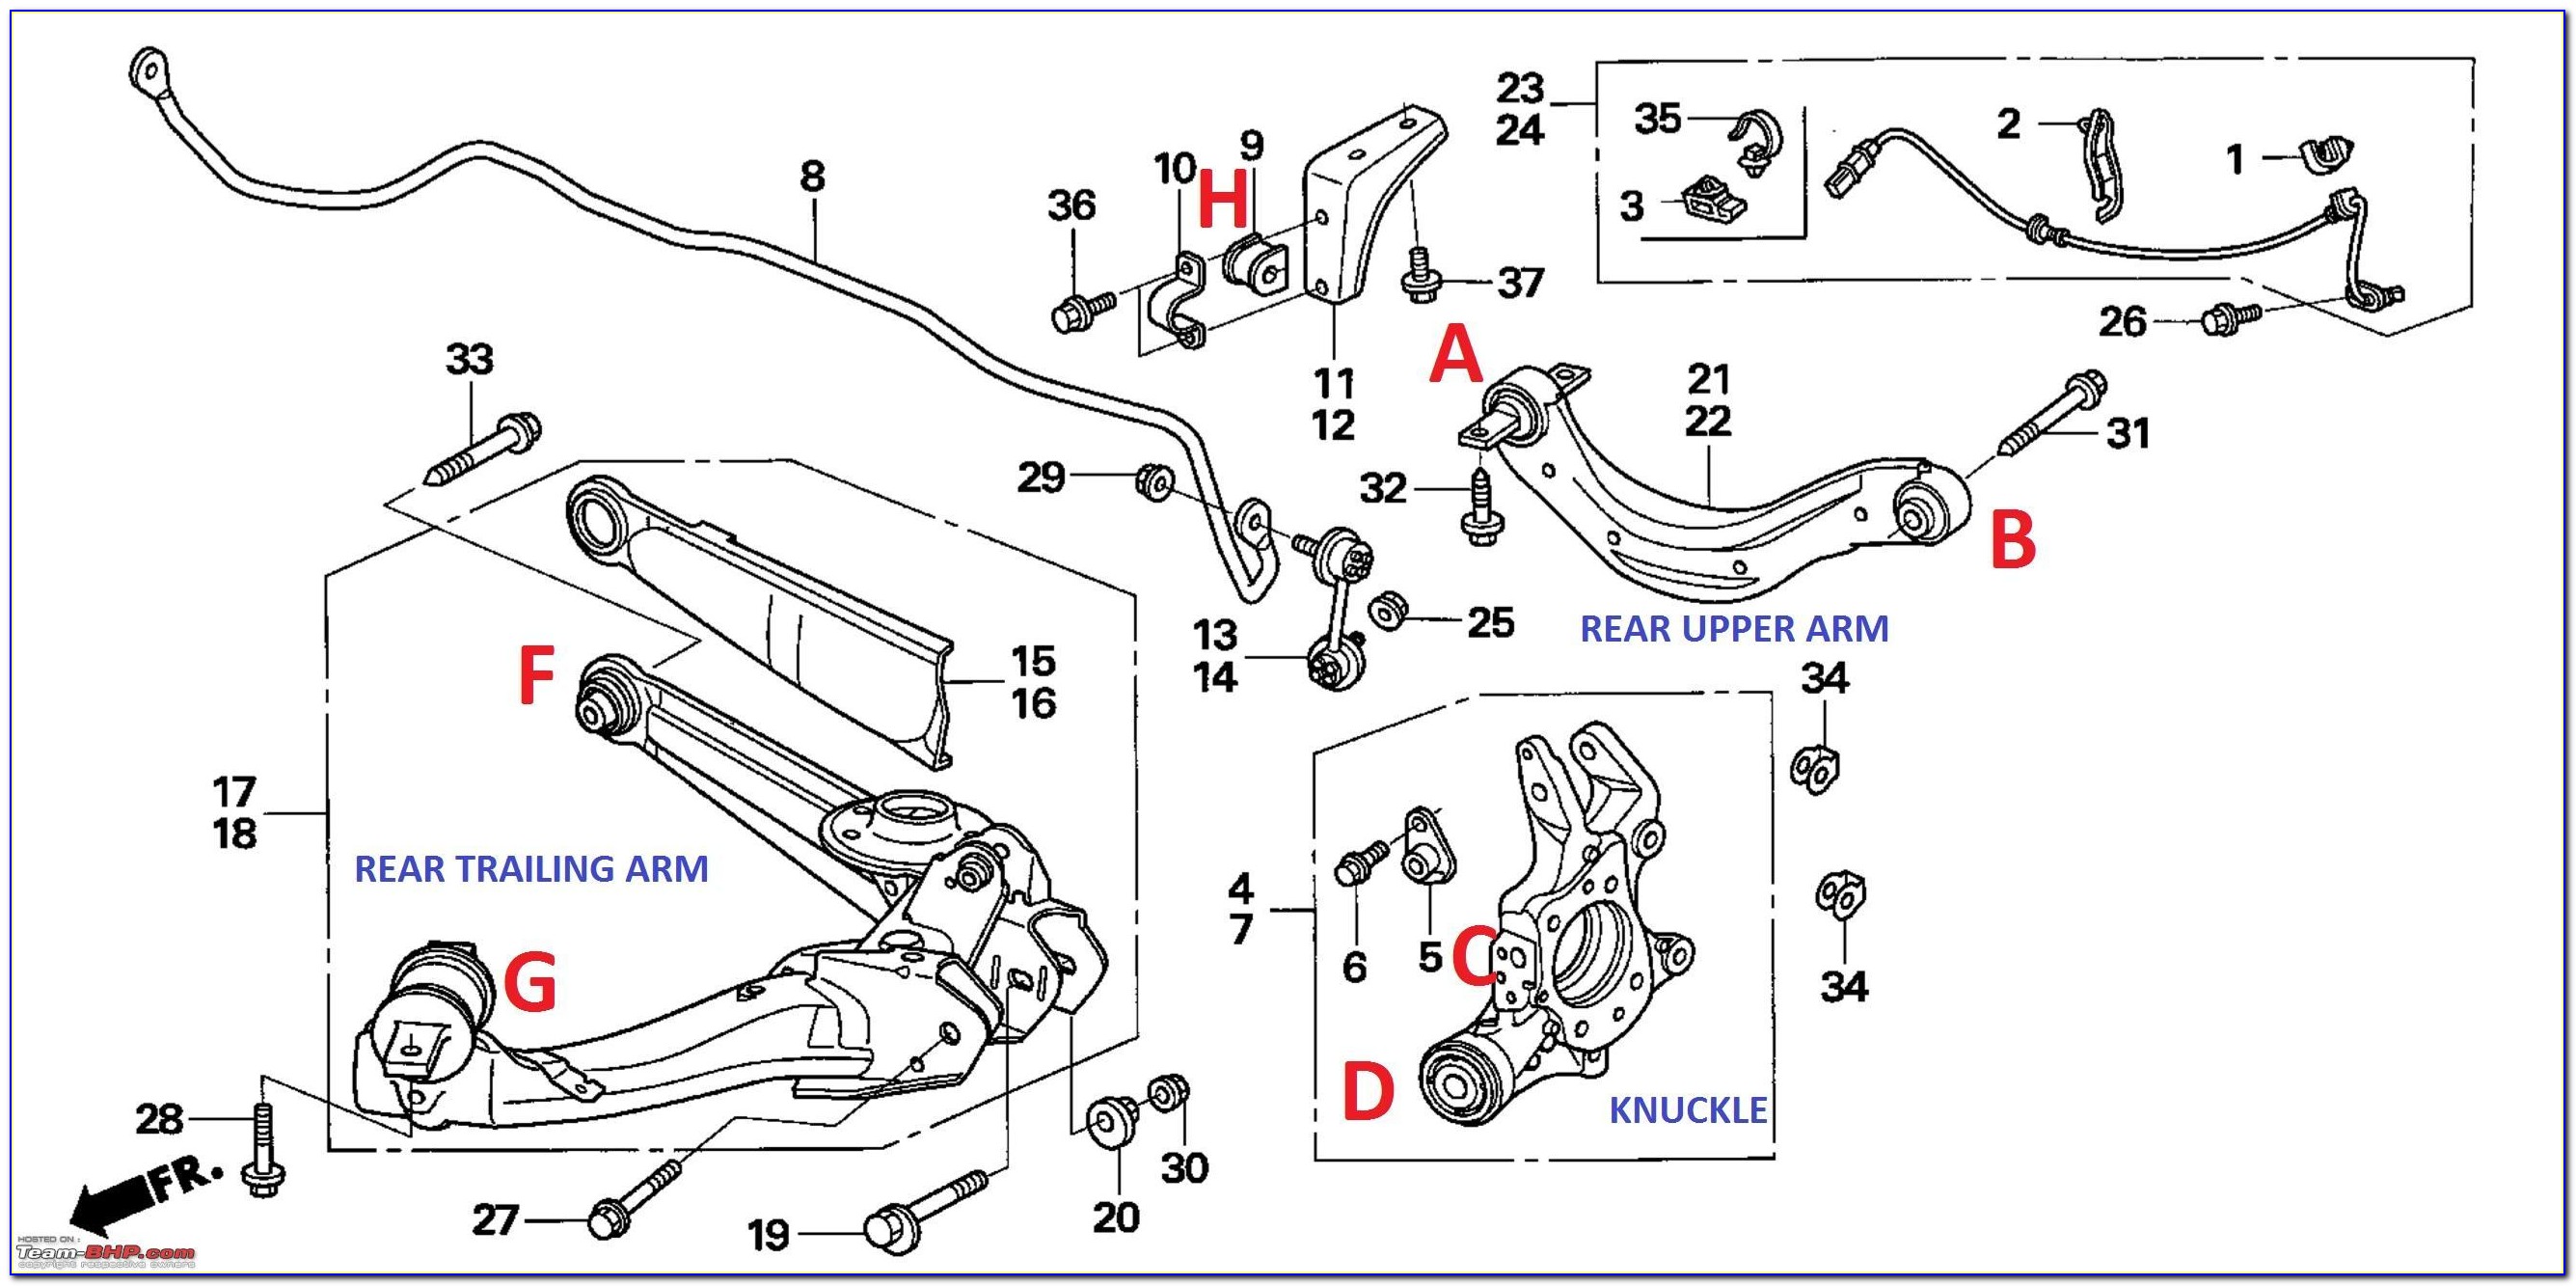 1997 Honda Civic Front Suspension Diagram